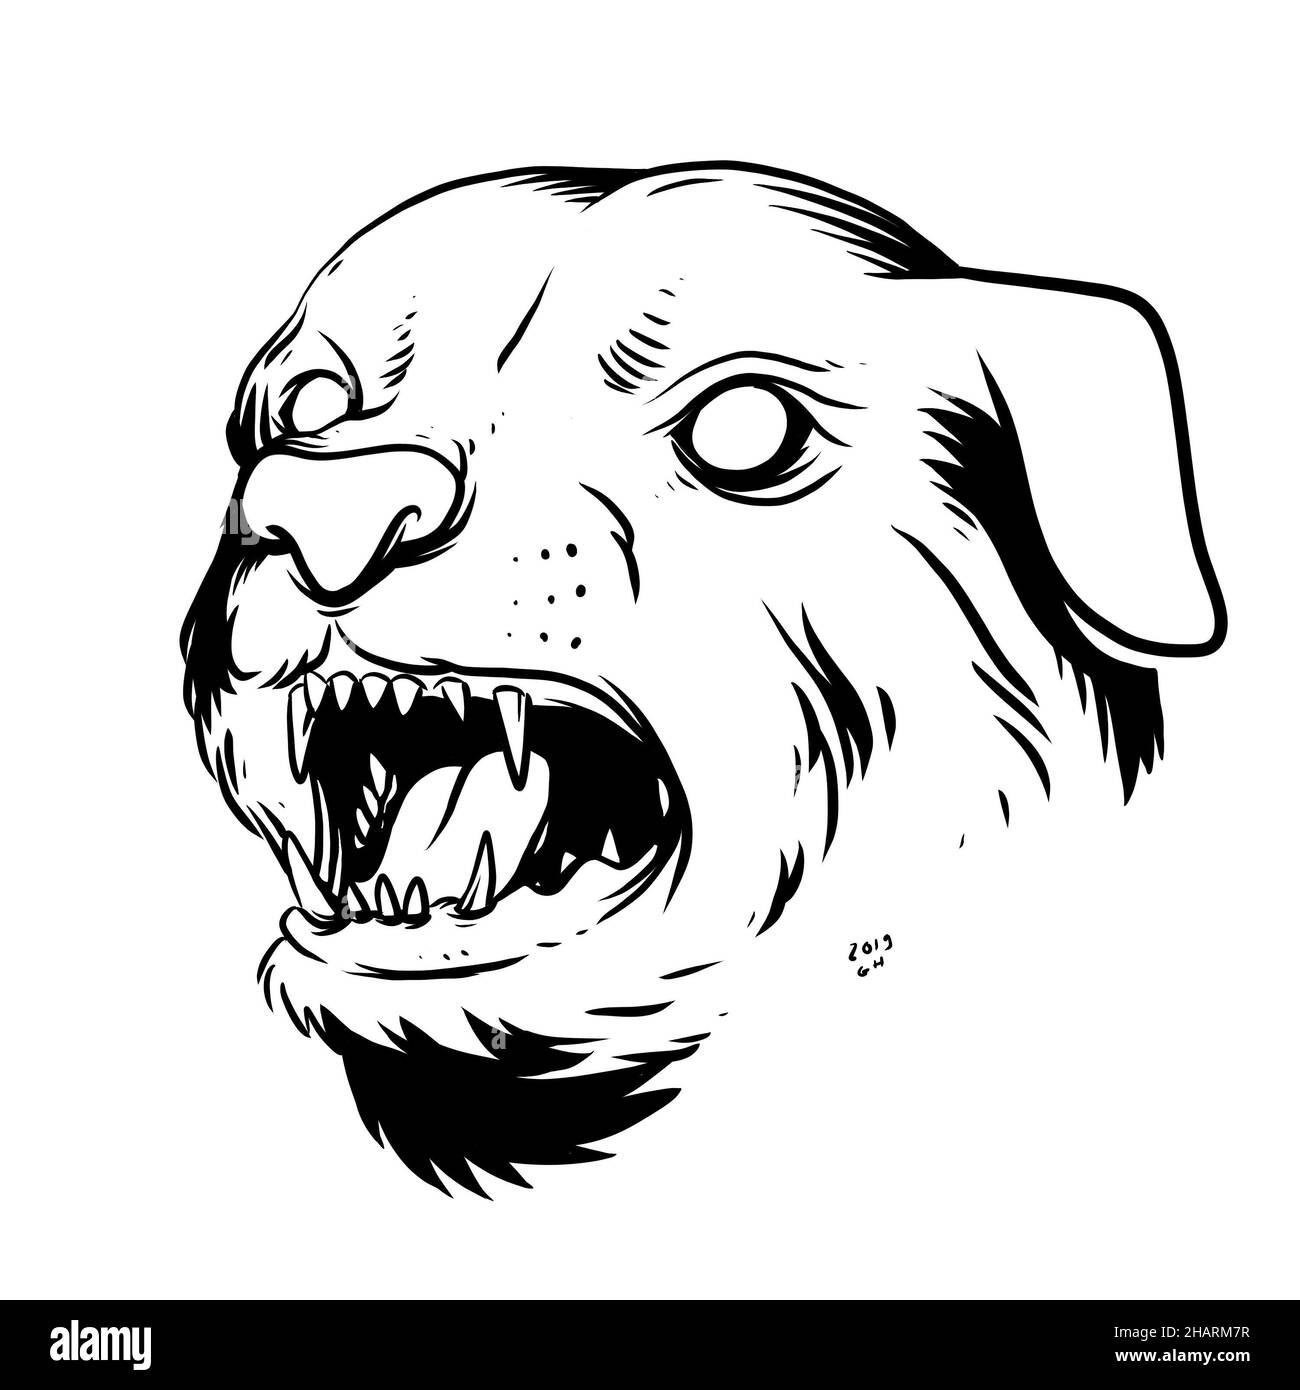 una cara de perro amenazante. una ilustración dibujada a mano de una cabeza de animal salvaje. dibujo de líneas para el emblema, el cartel, la pegatina, el tatuaje, etc. Foto de stock